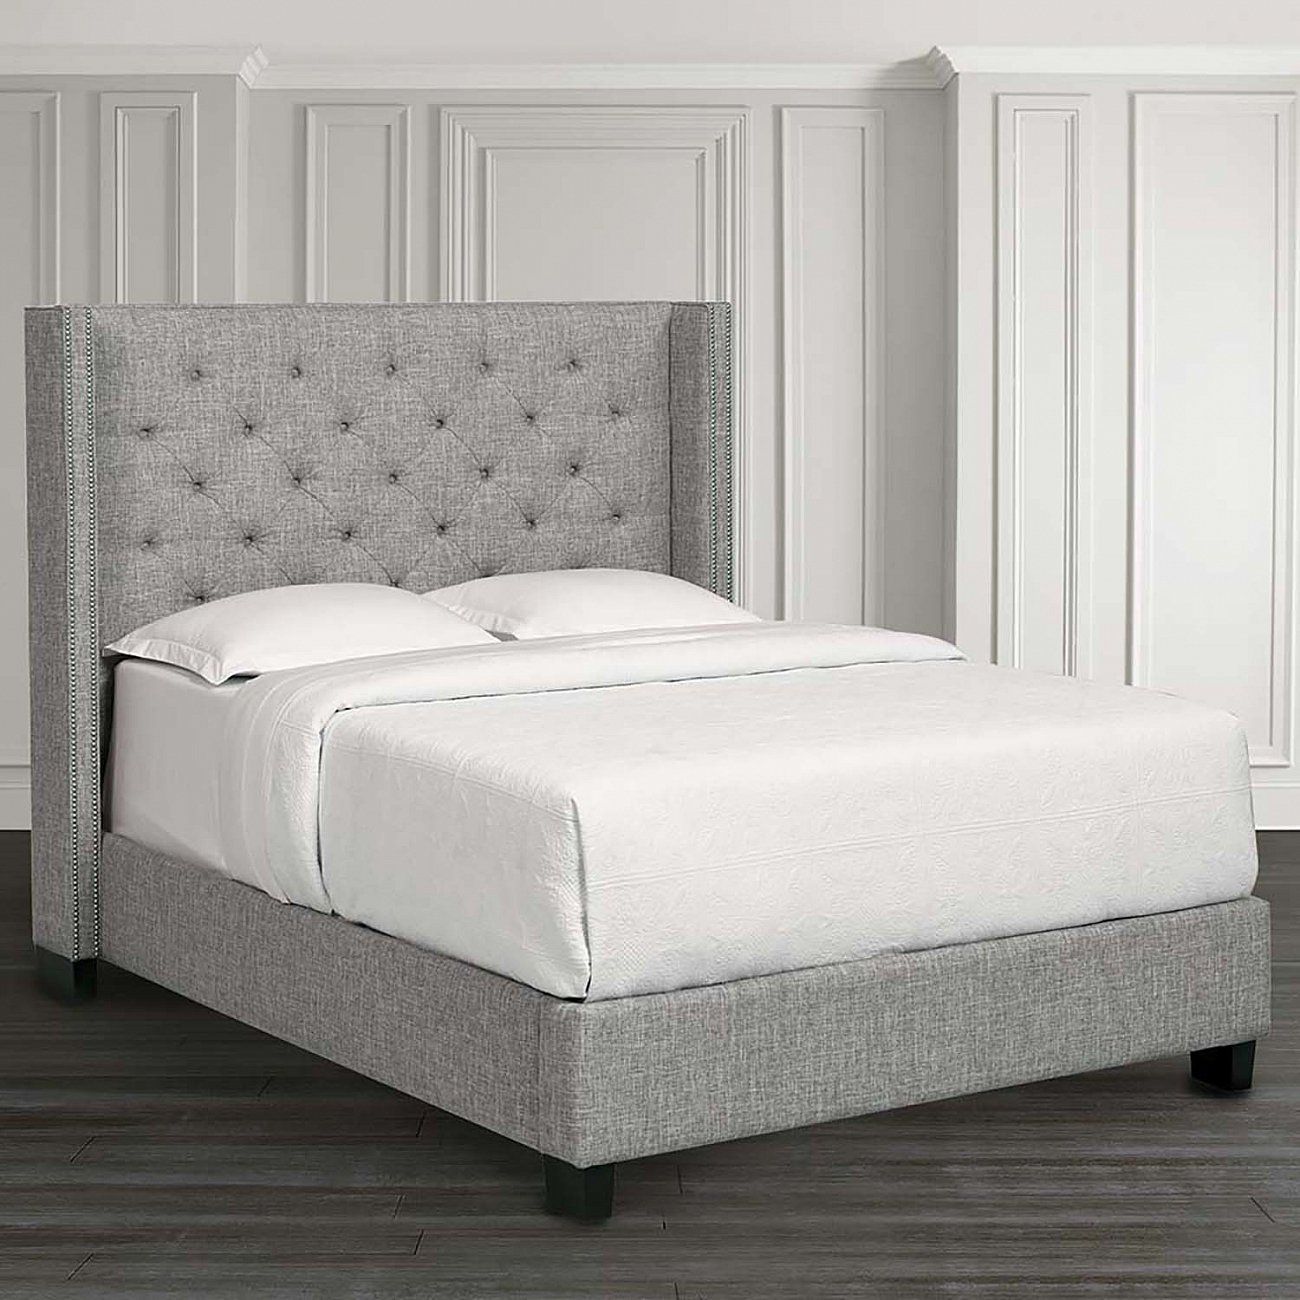 Кровать двуспальная с мягким изголовьем 160х200 см синяя Wing